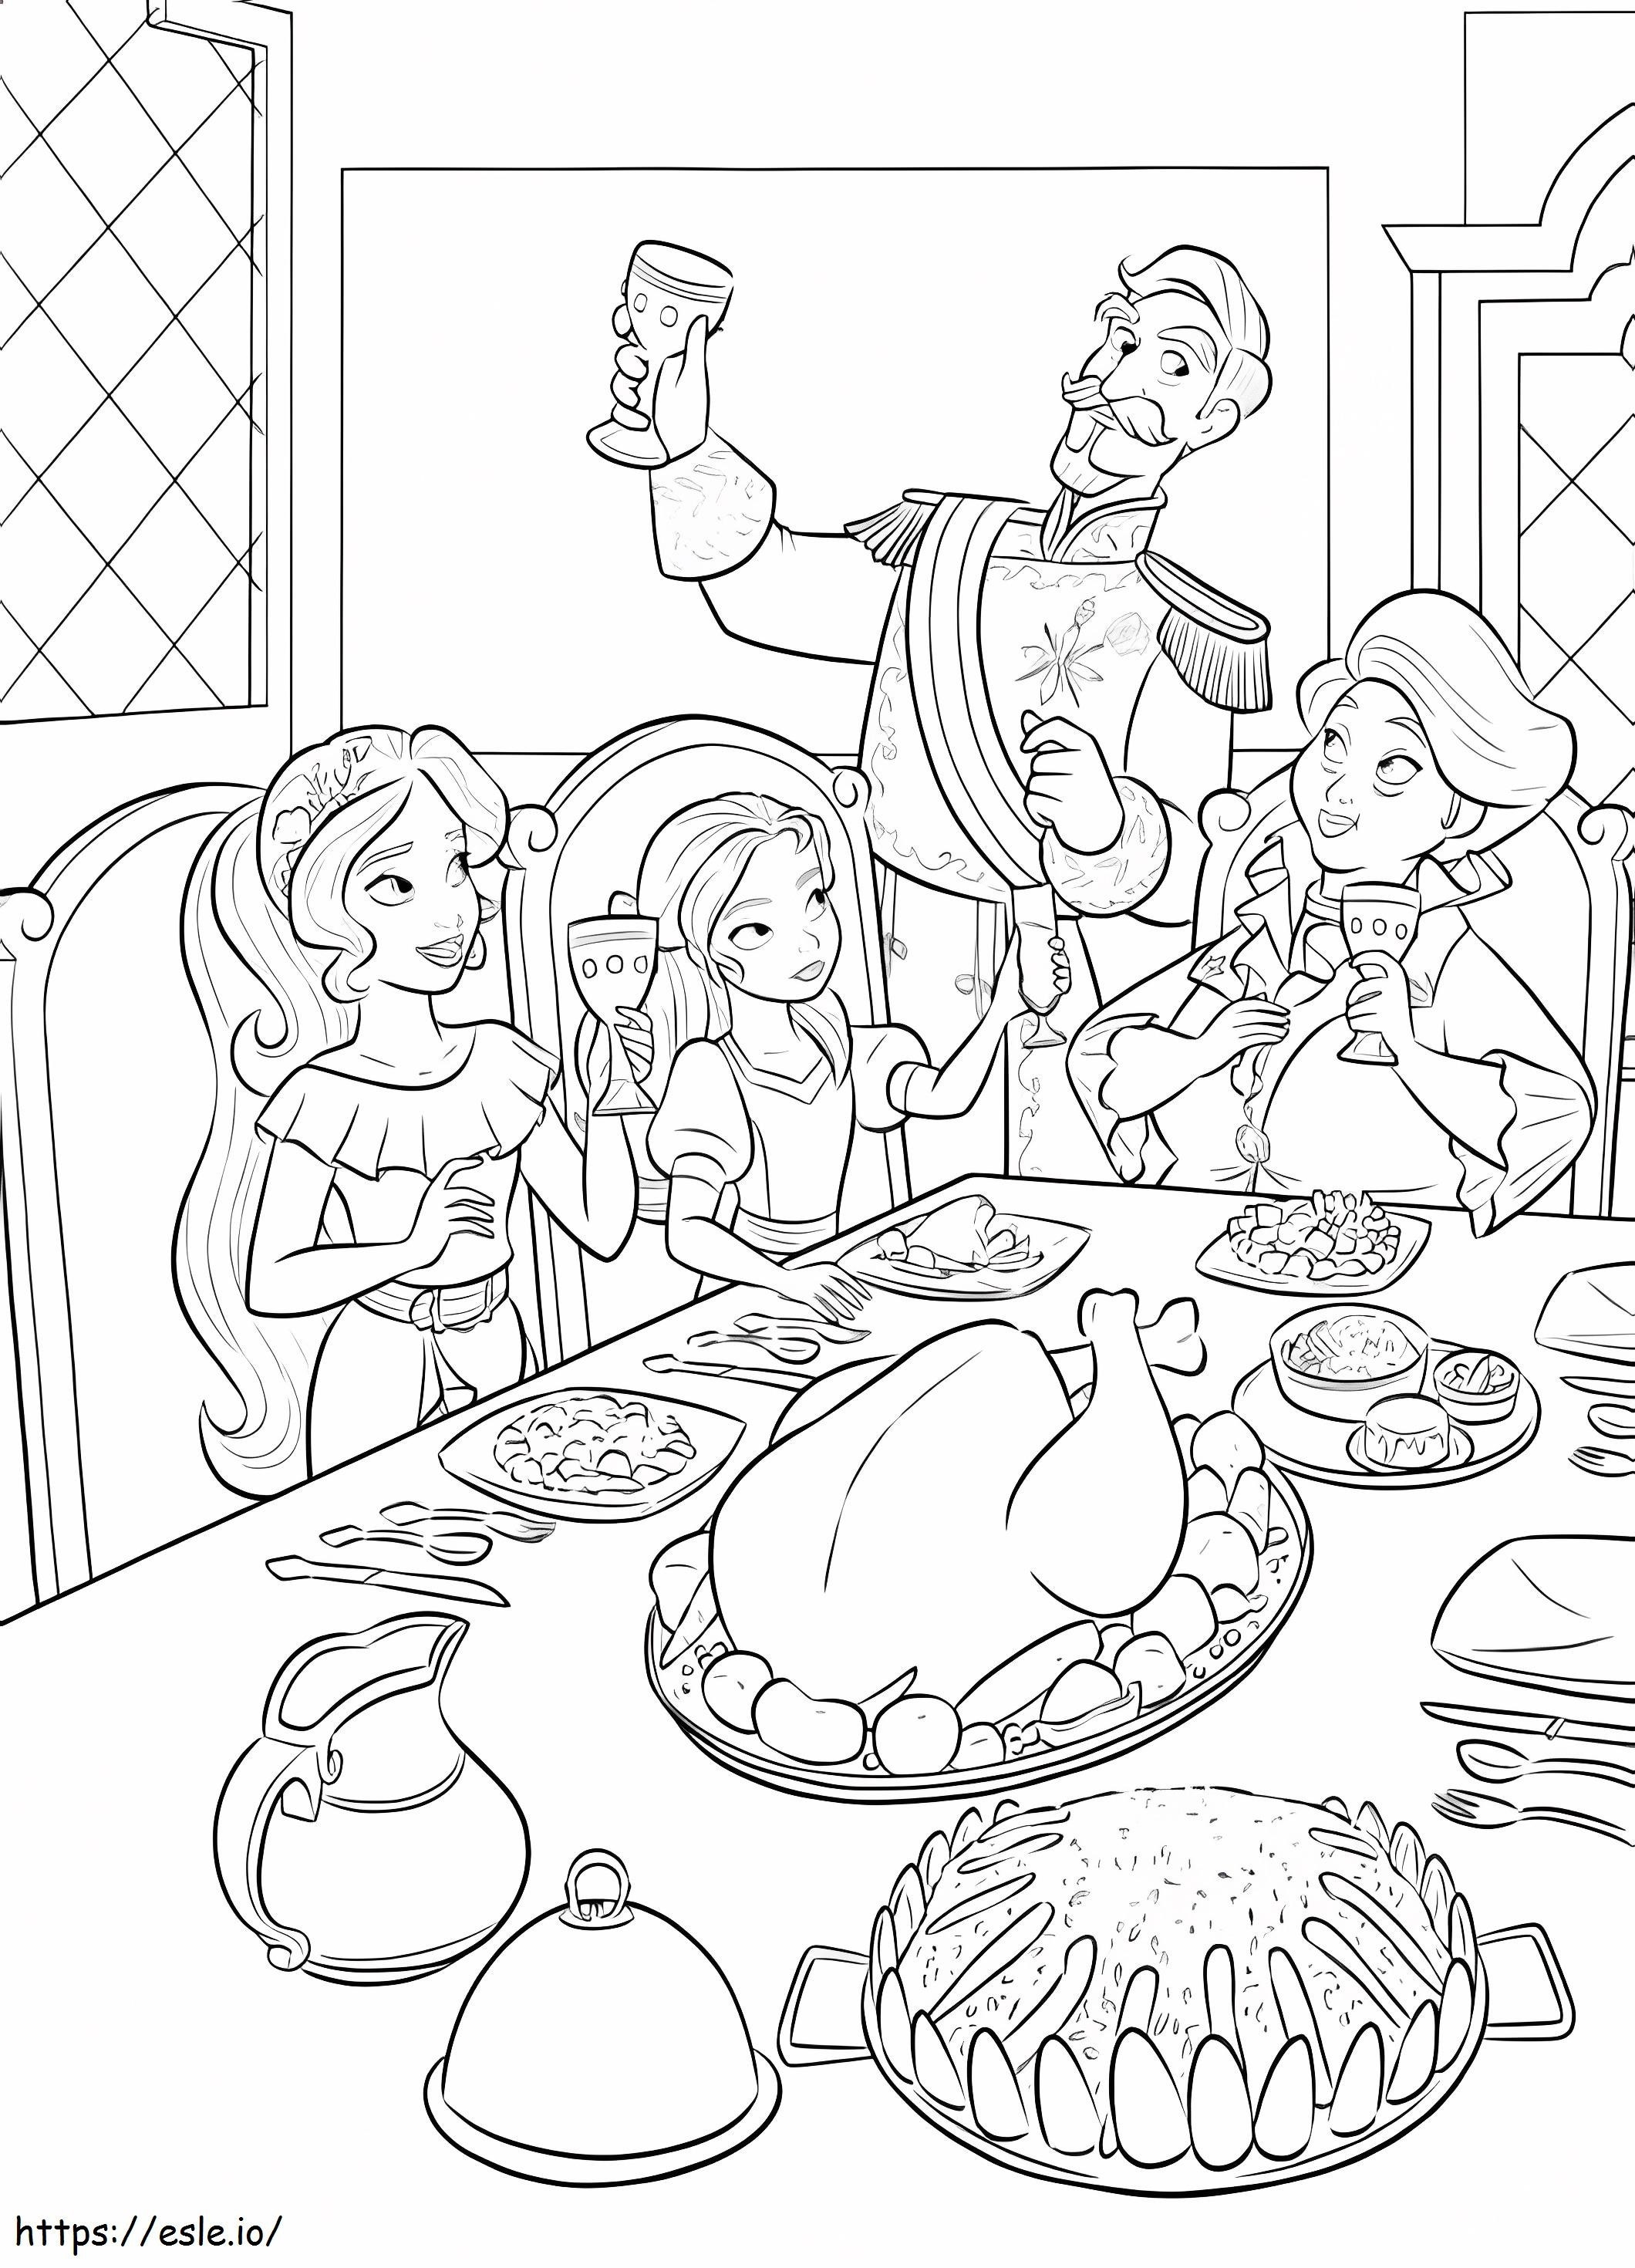 Princesa Elena y familia comiendo para colorear